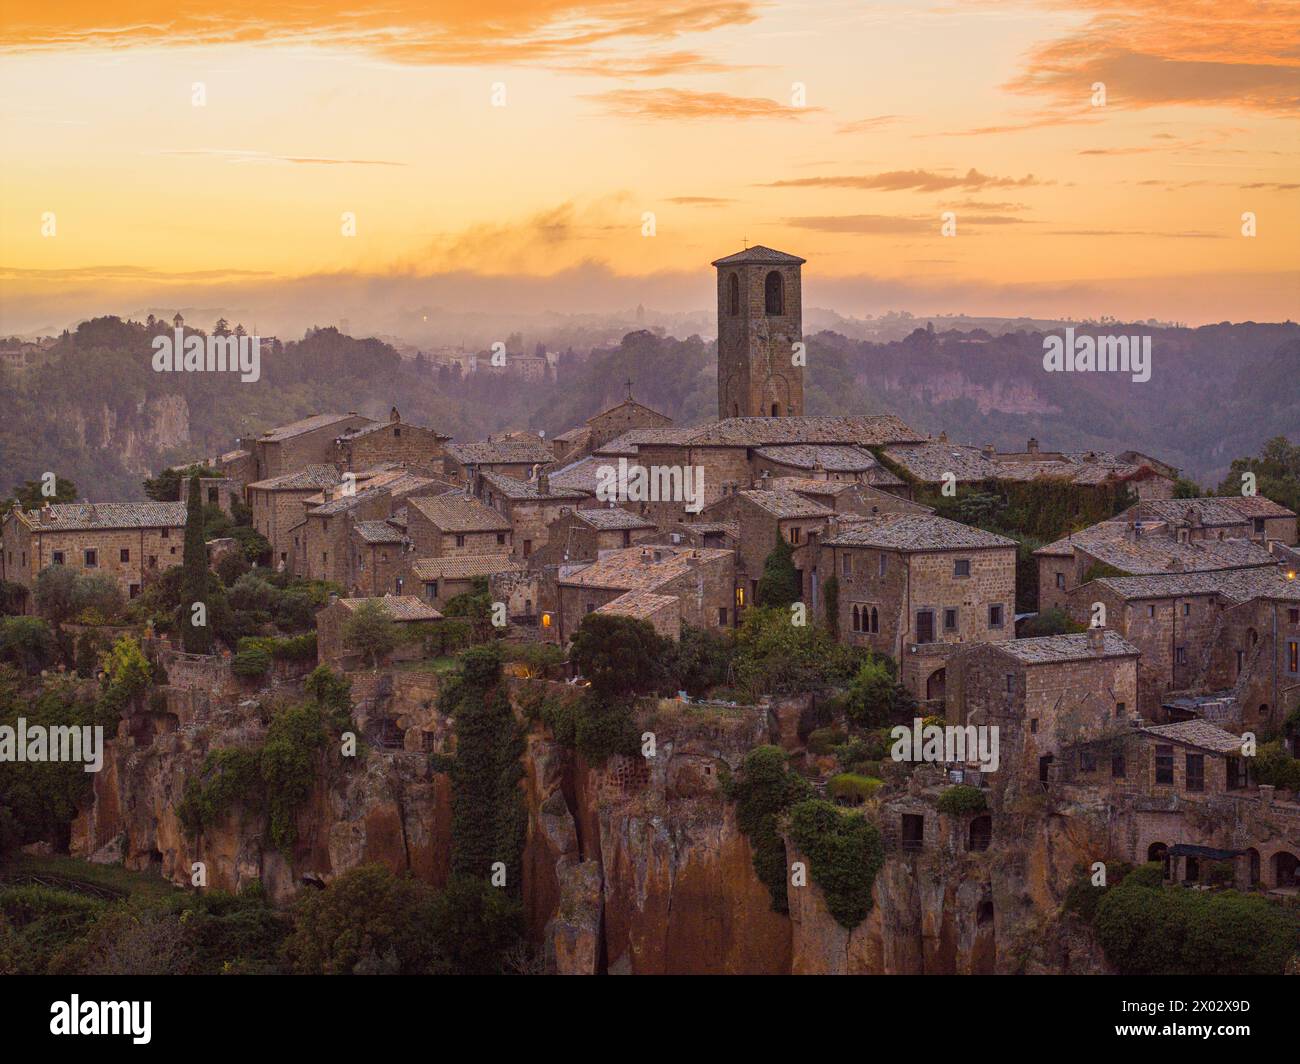 The beautiful village of Civita di Bagnoregio during an autumn sunset, Civita di Bagnoregio, Viterbo, Lazio, Italy, Europe Stock Photo